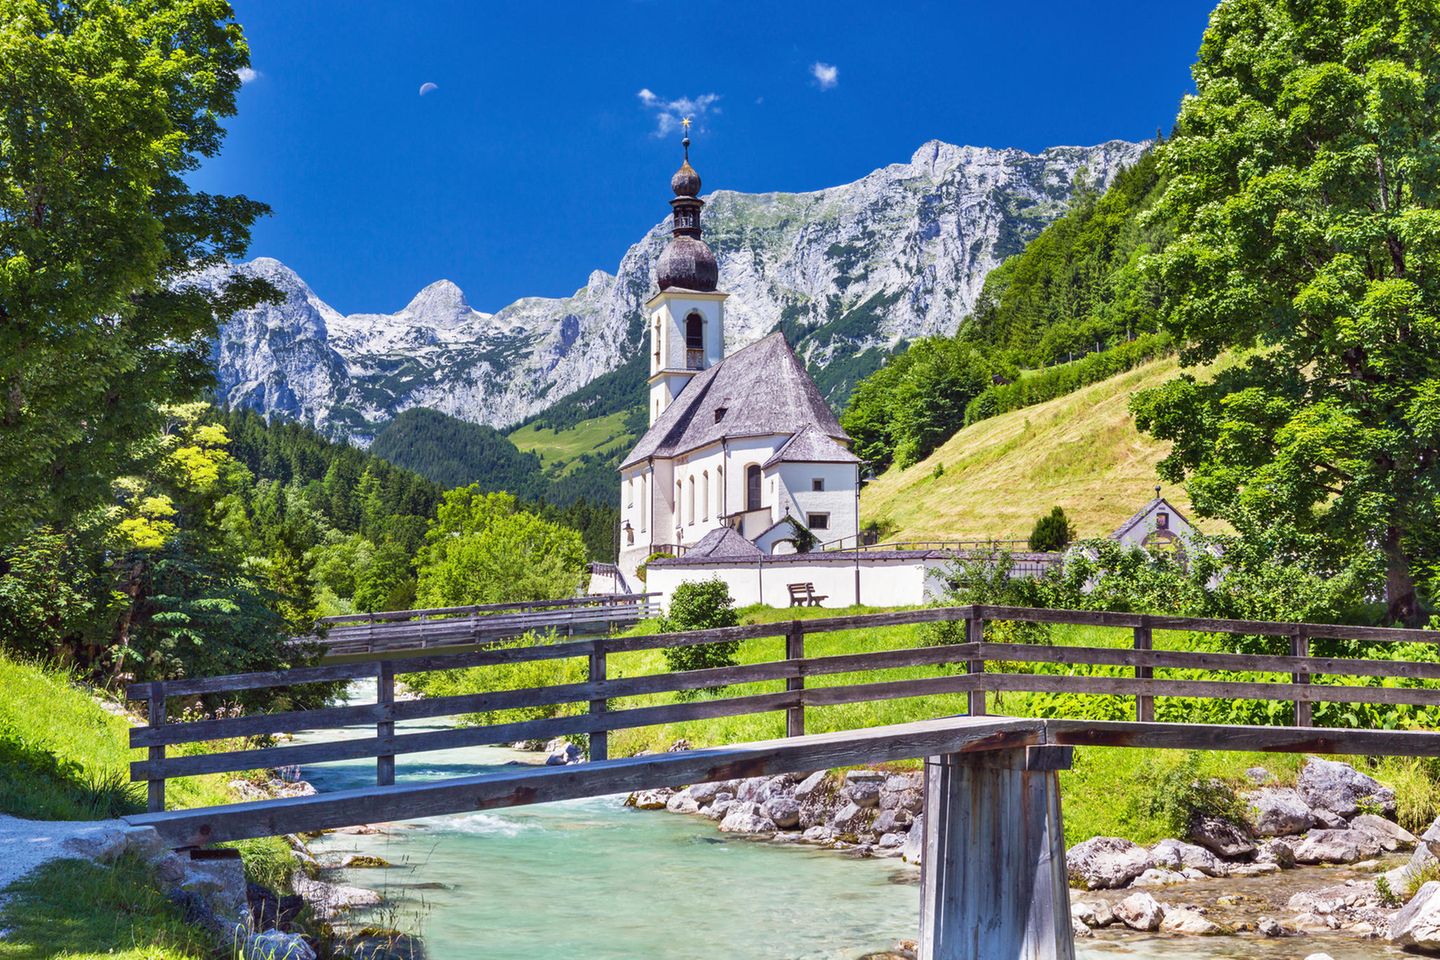 Berchtesgadener Land: Wie aus dem Bilderbuch - [GEO]